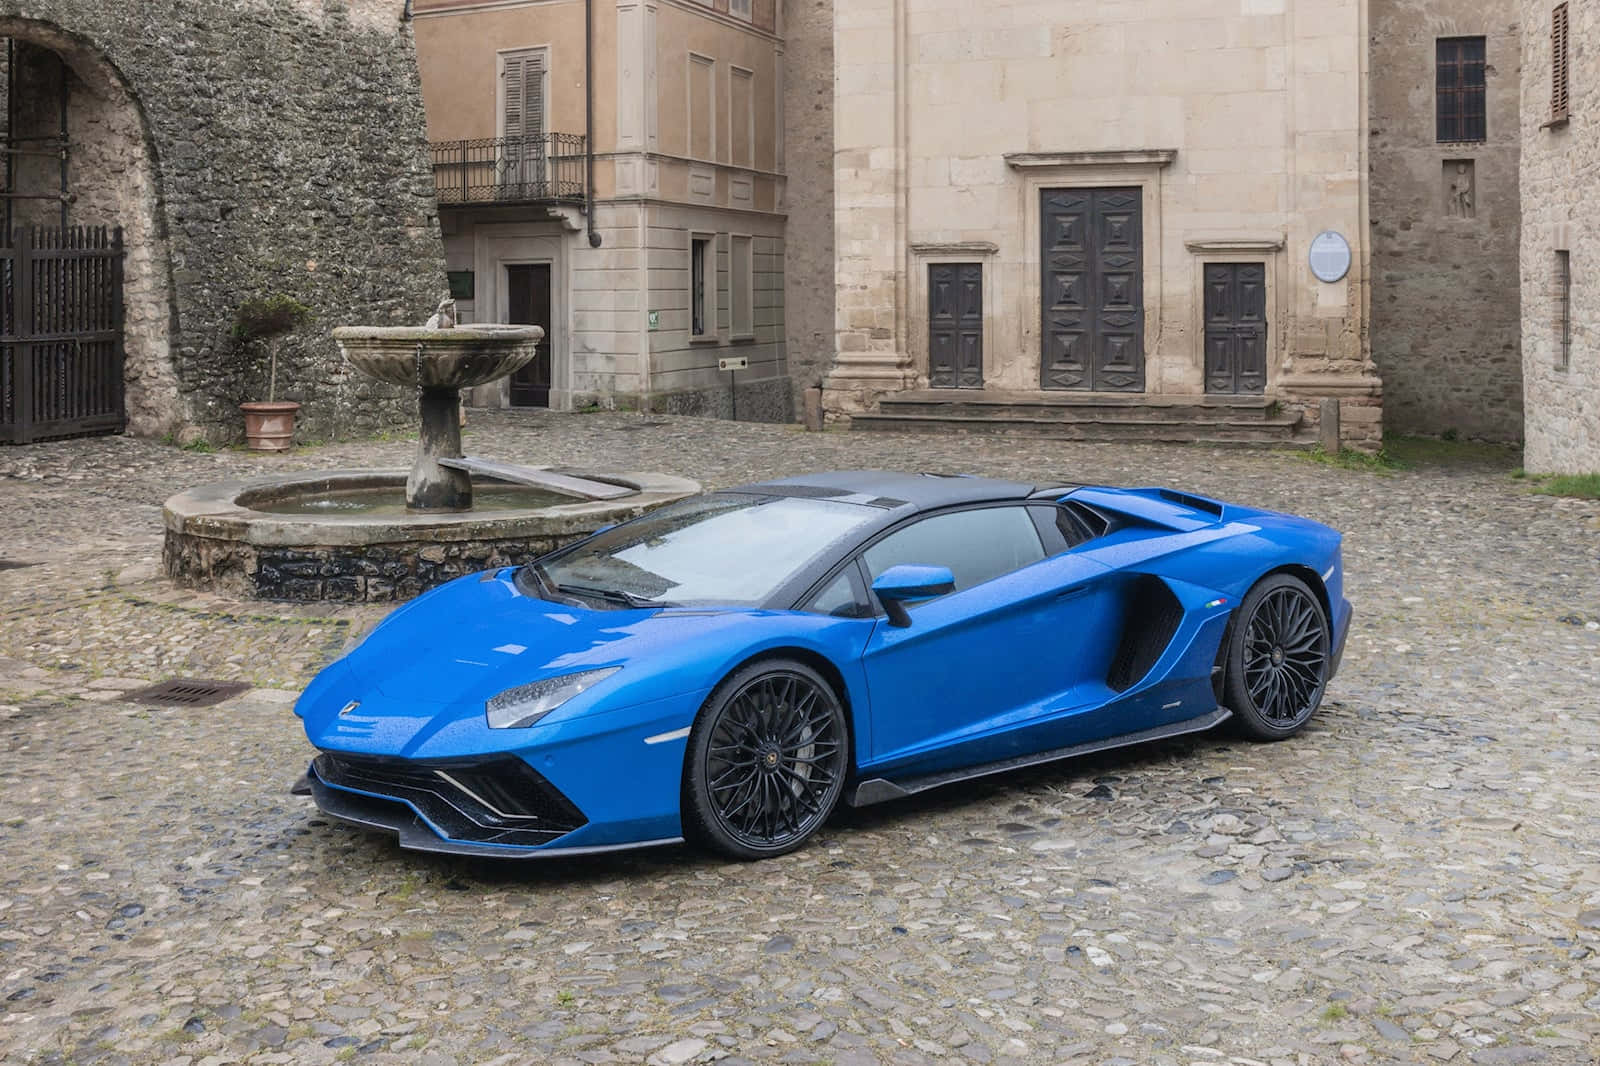 Derblaue Lamborghini Huracan Ist Vor Einem Steinernen Gebäude Geparkt.